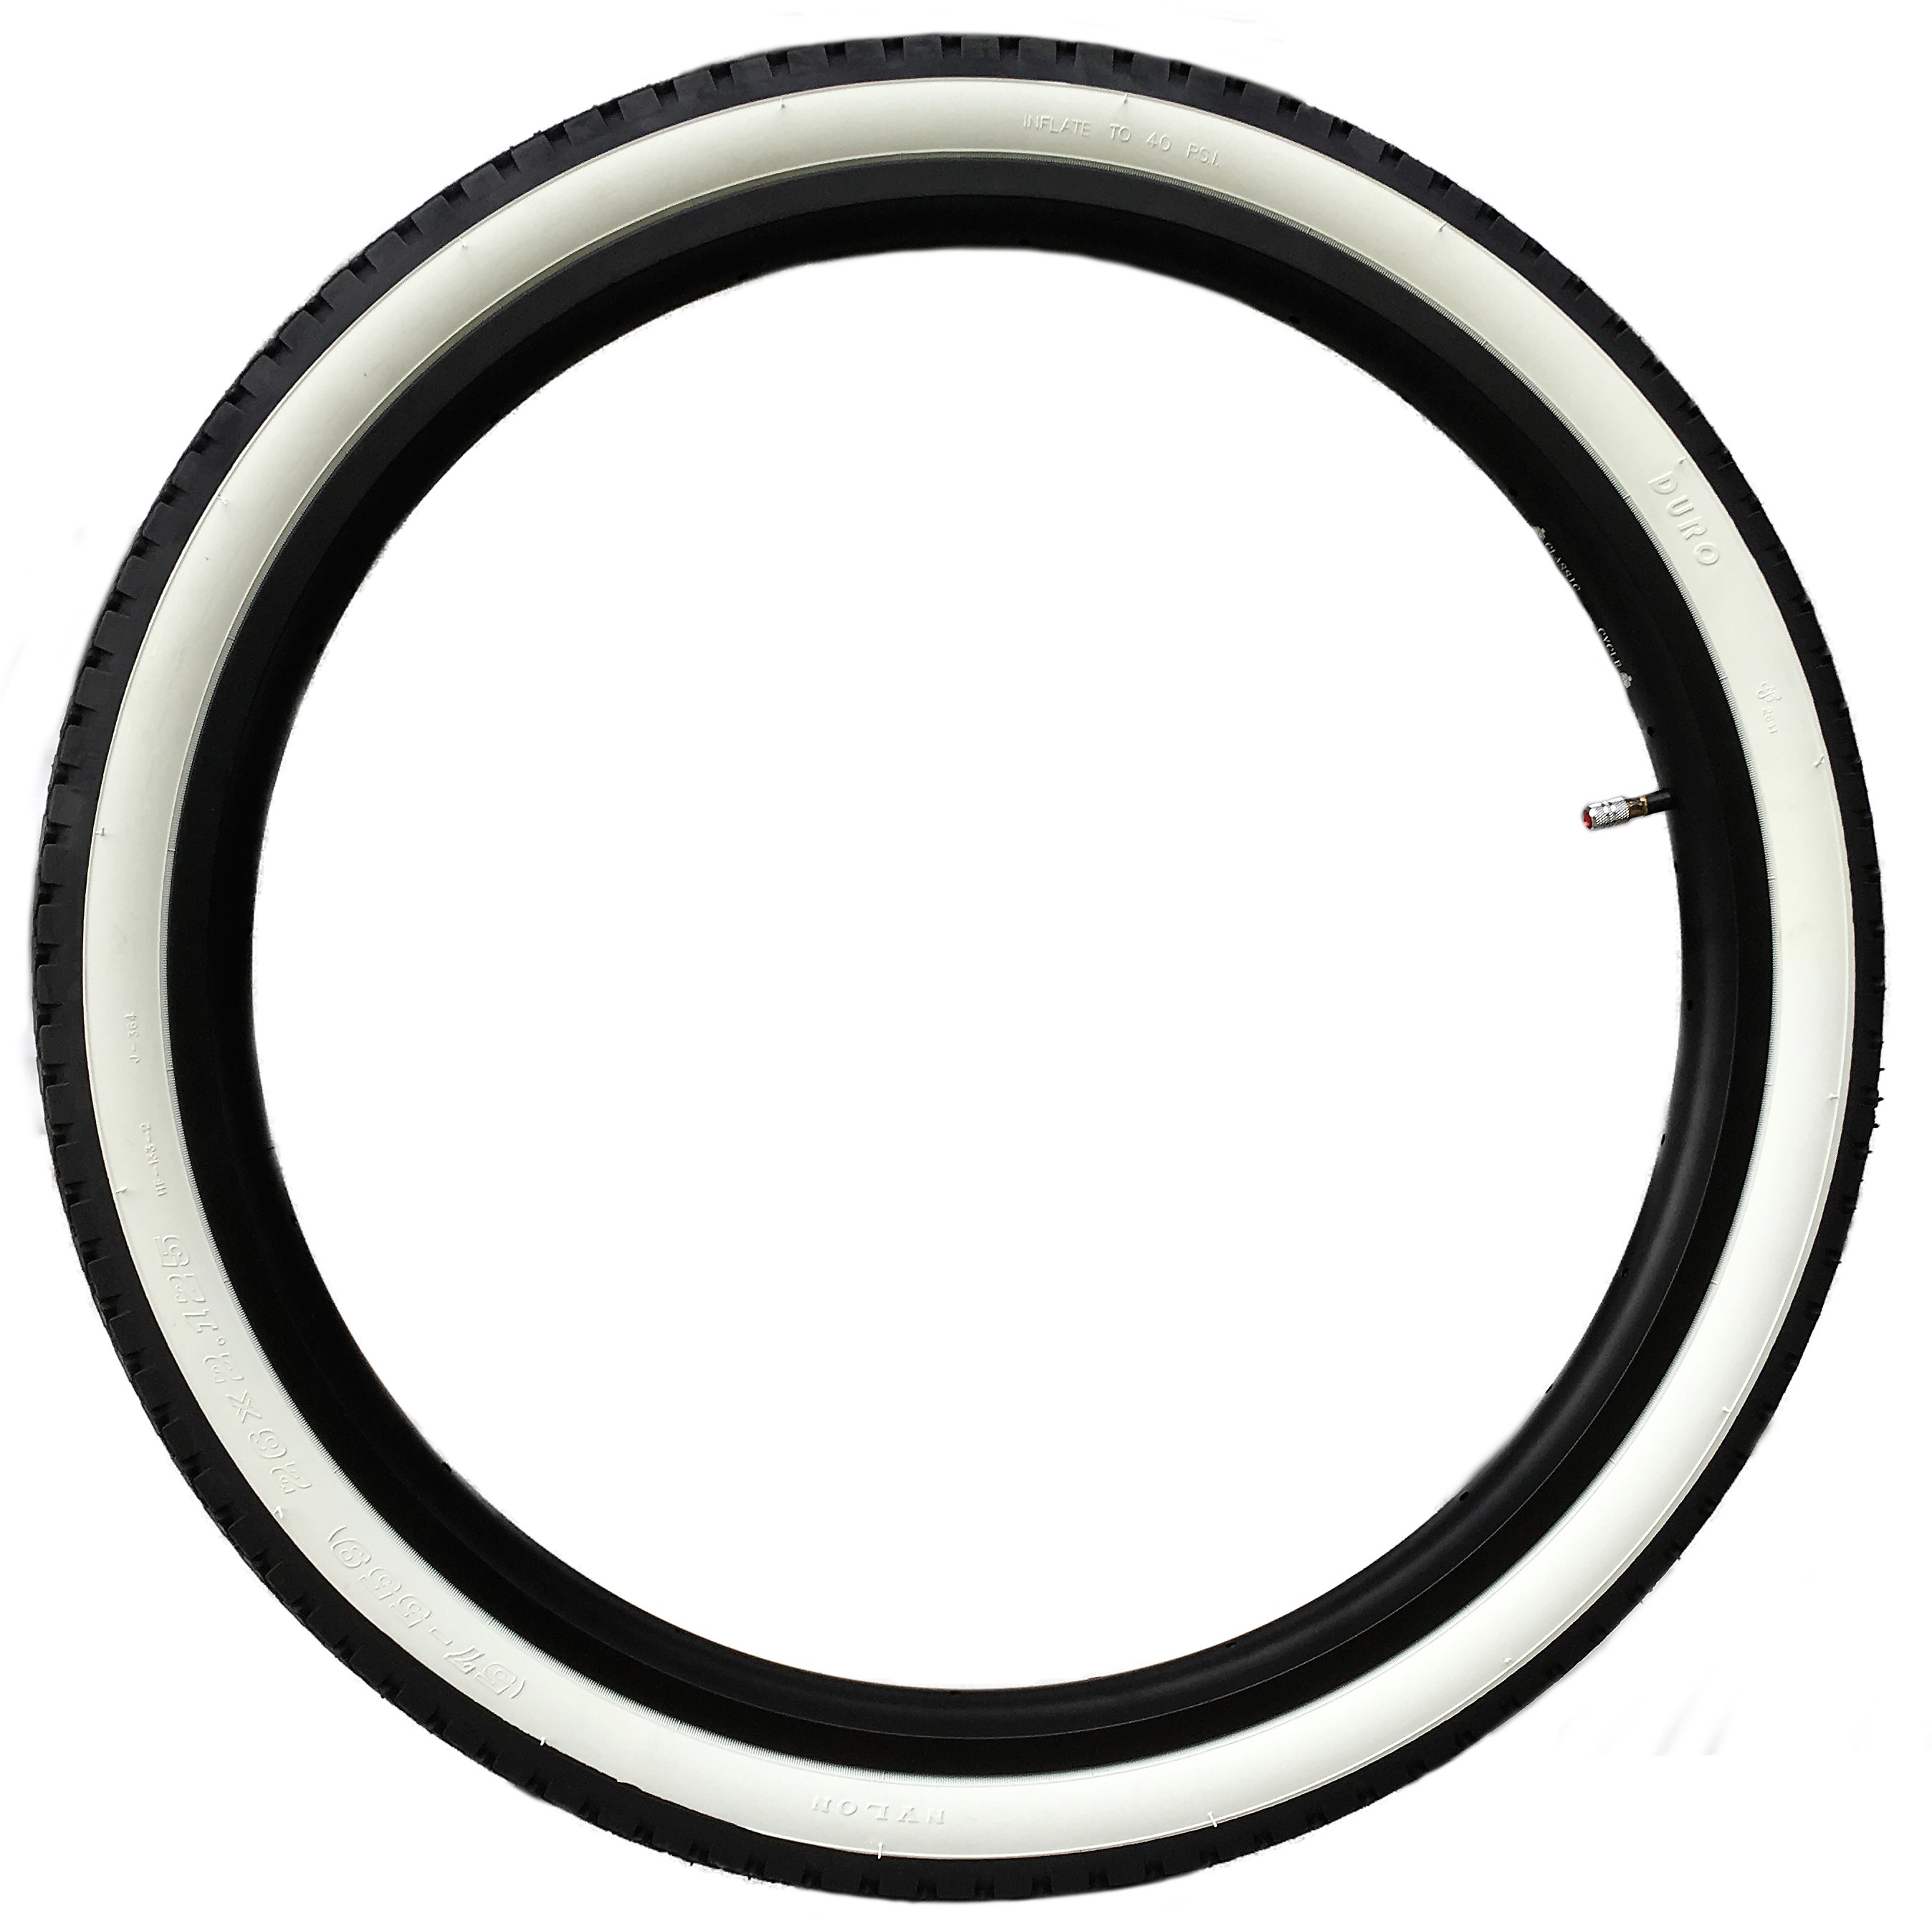 Neumáticos tipo balón Streetking 26 x 2.125, banda blanca